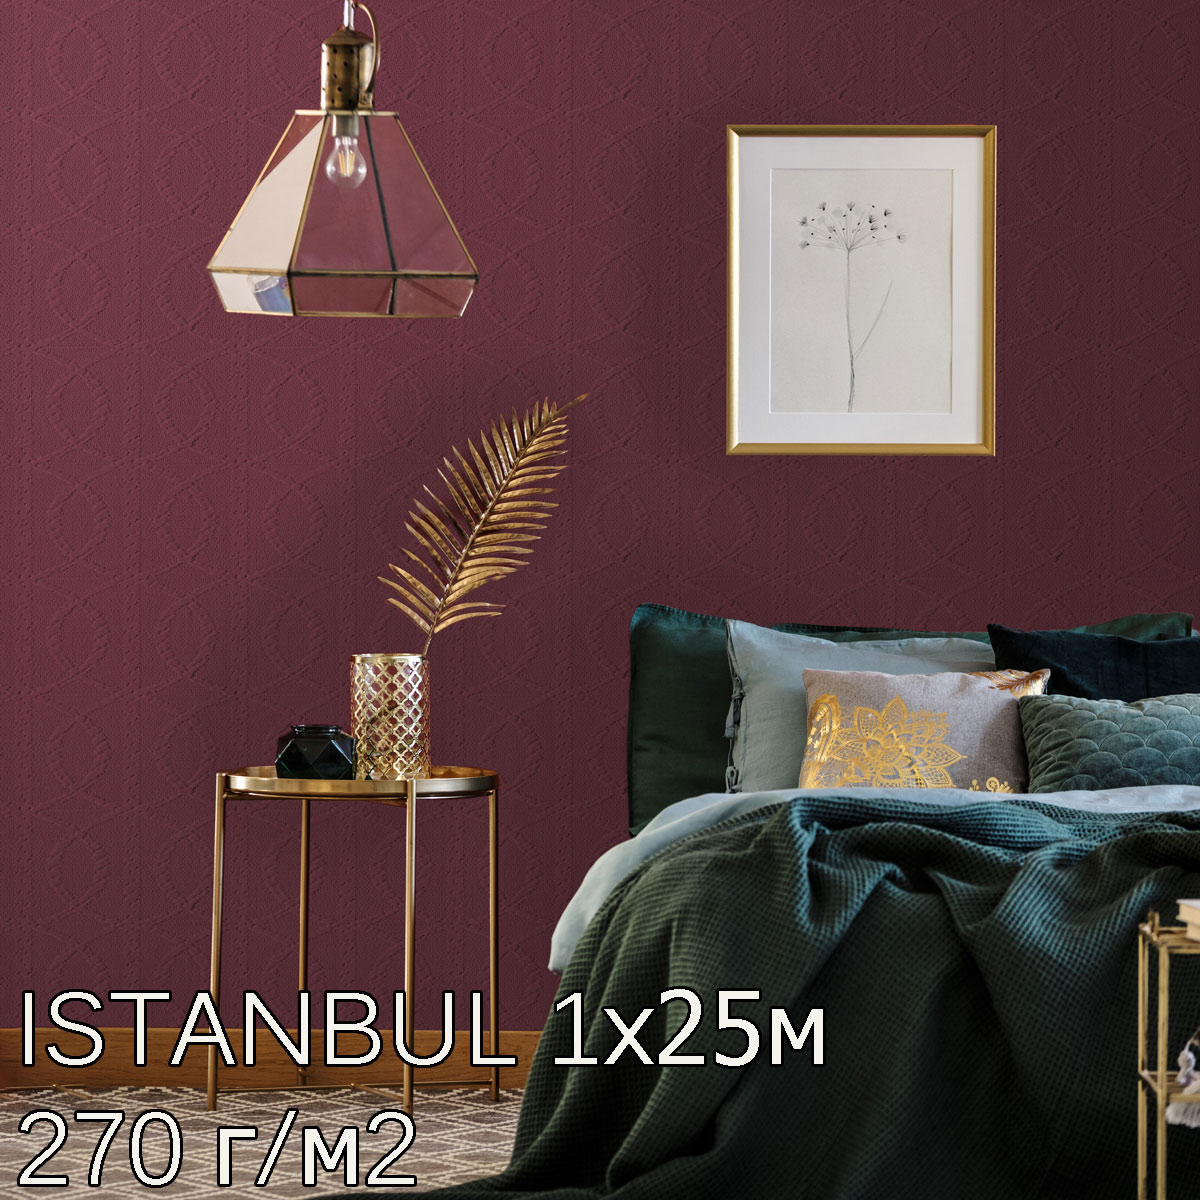  Istanbul bautex  